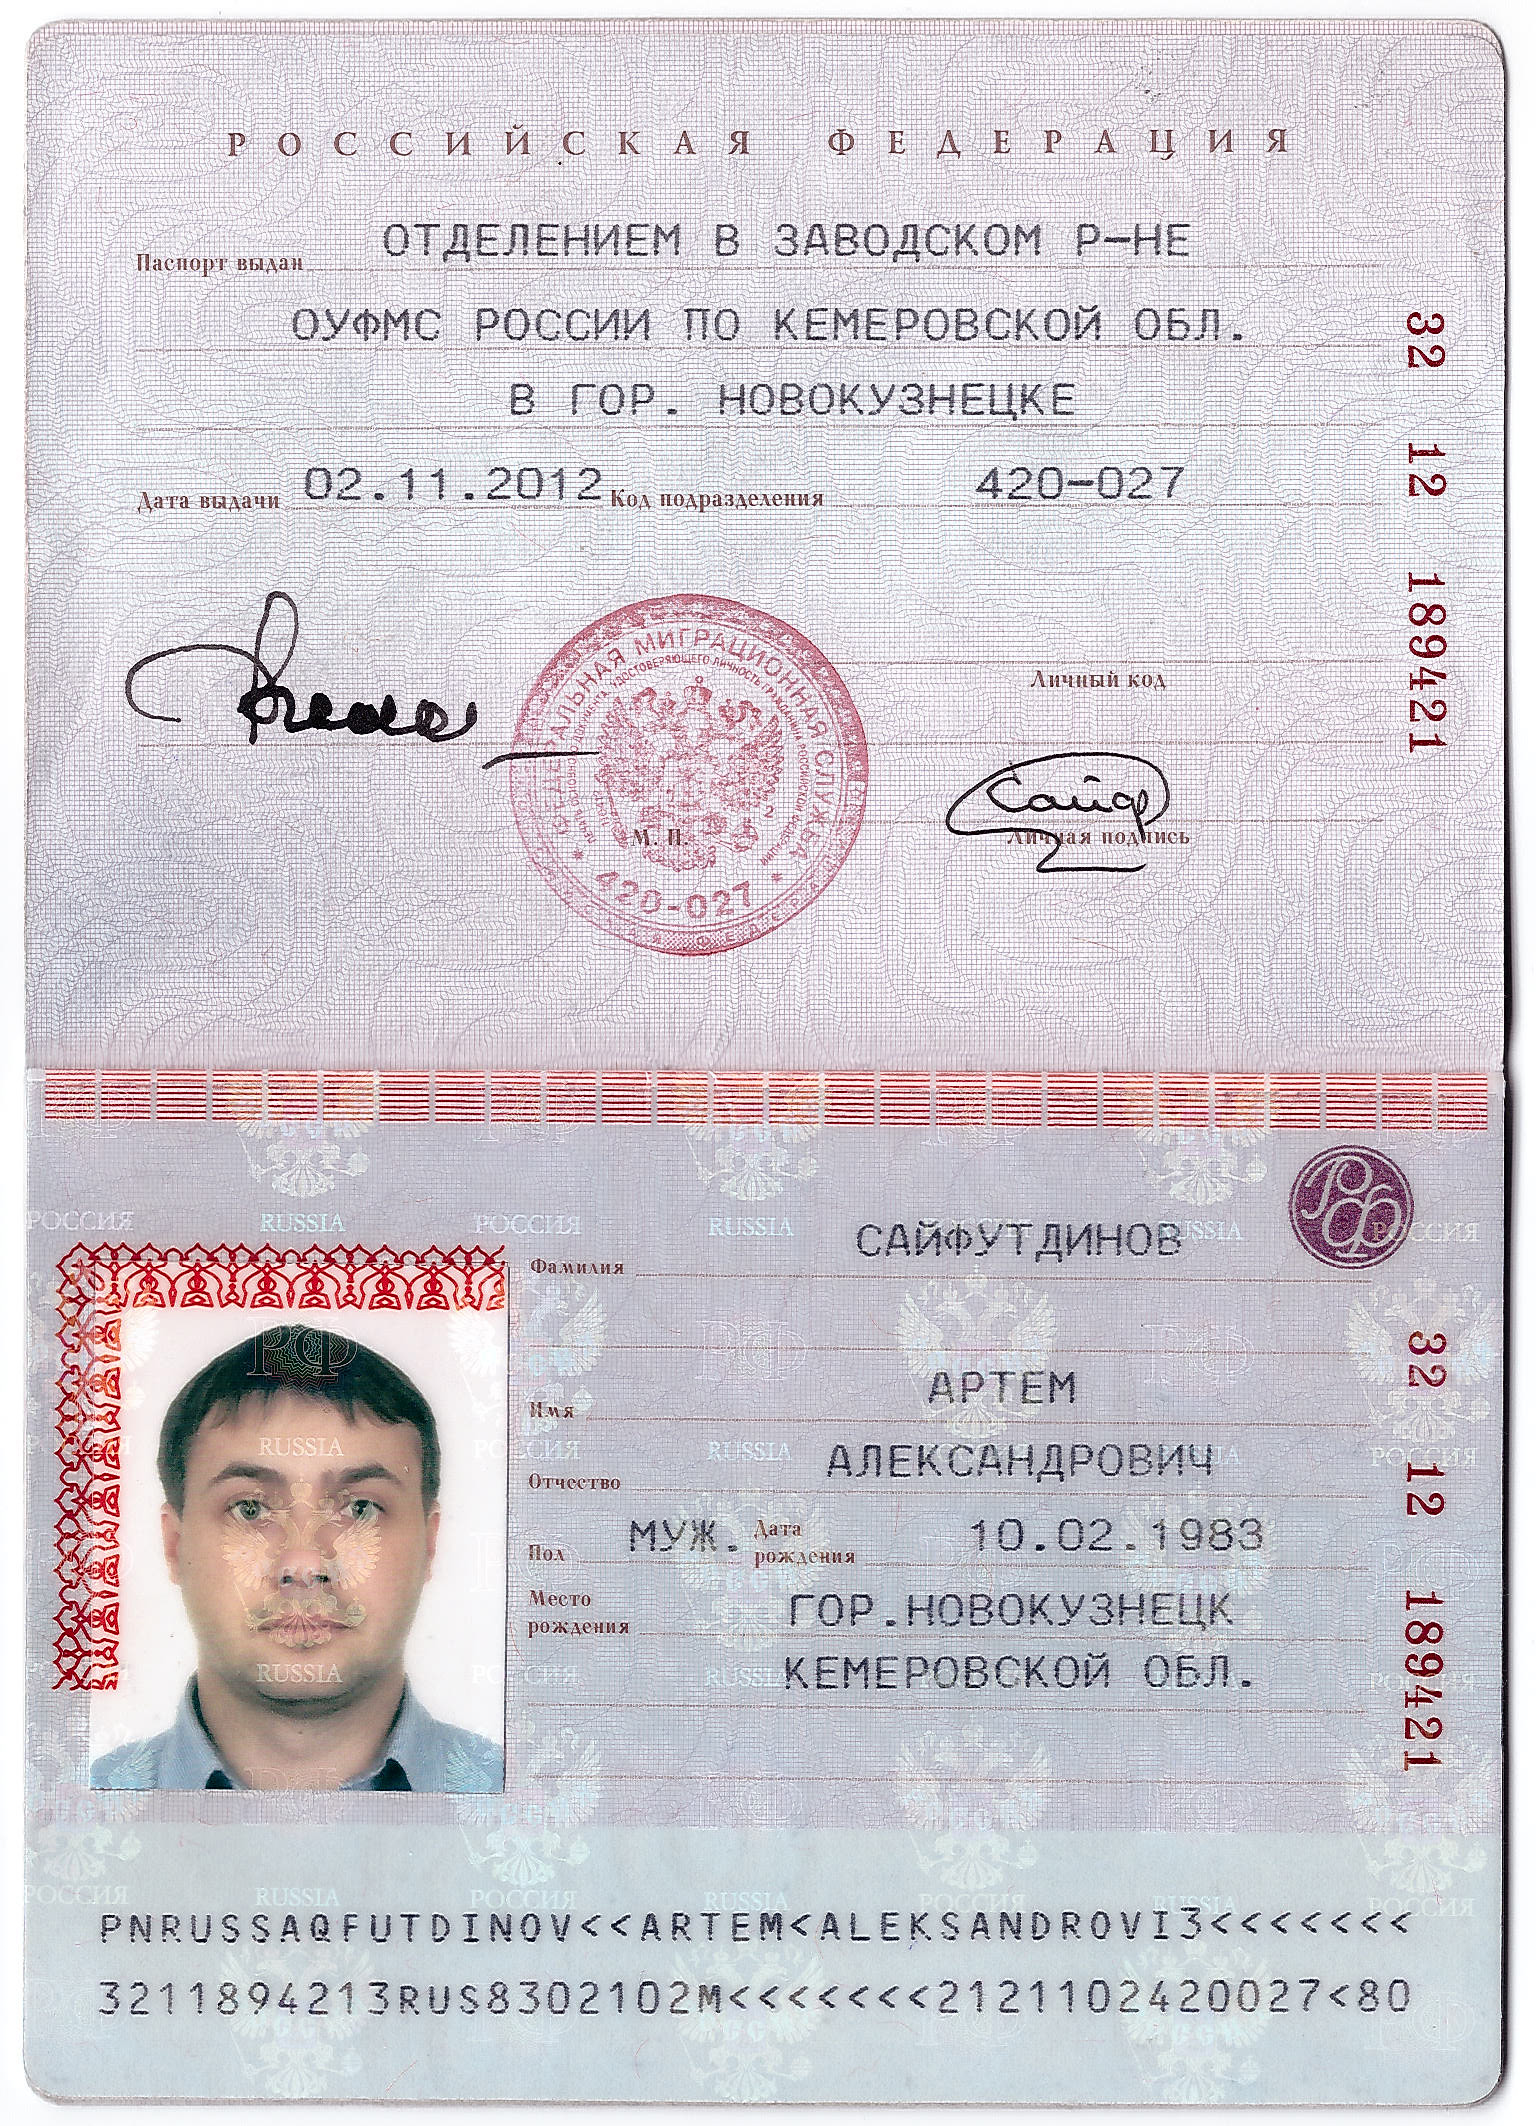 Passport 2-3